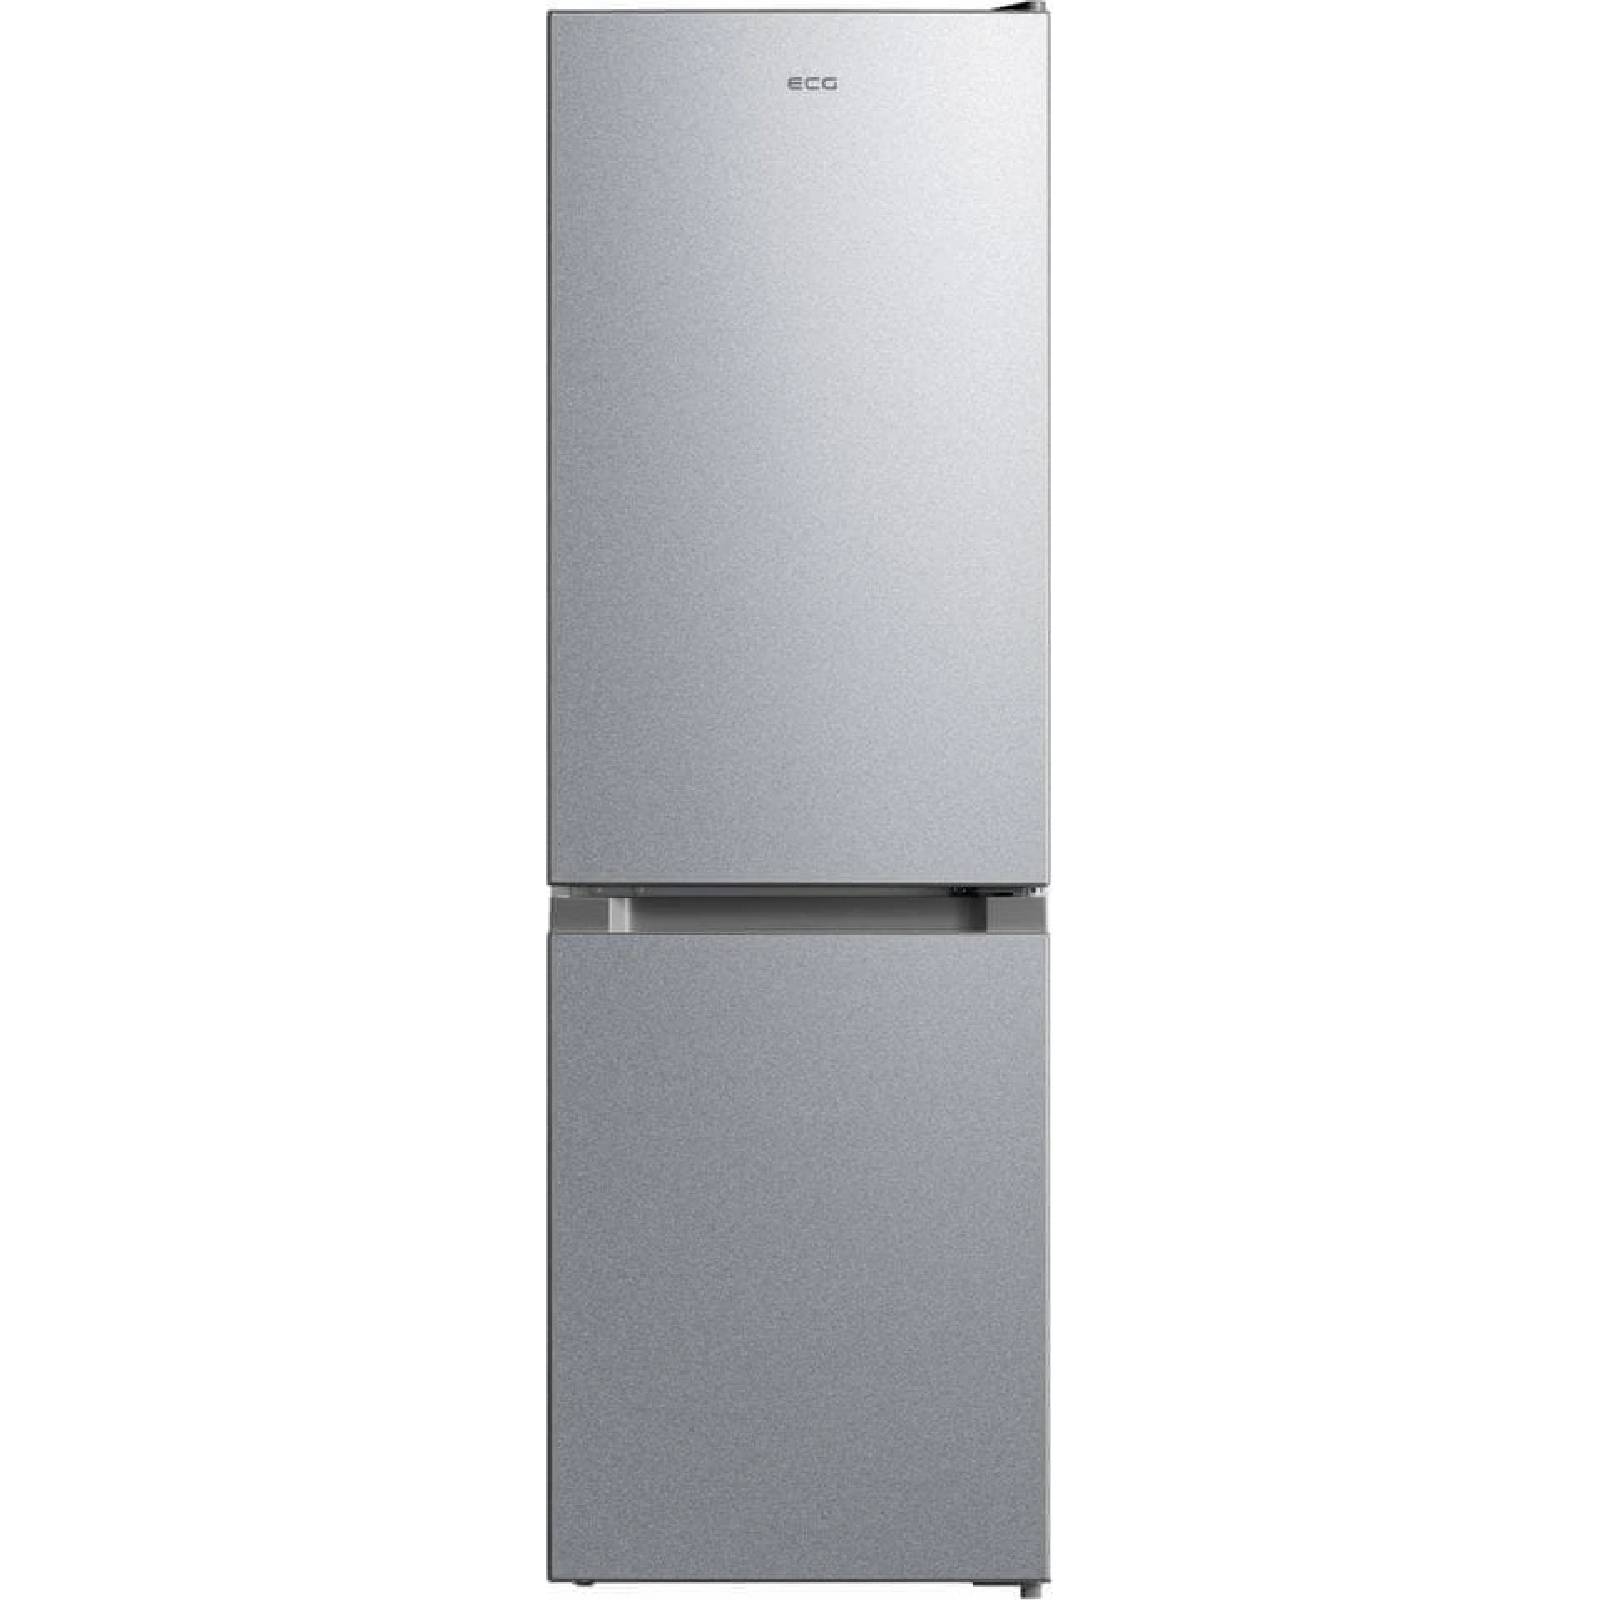 ECG ERB 21531 SE Kombinált hűtőszekrény